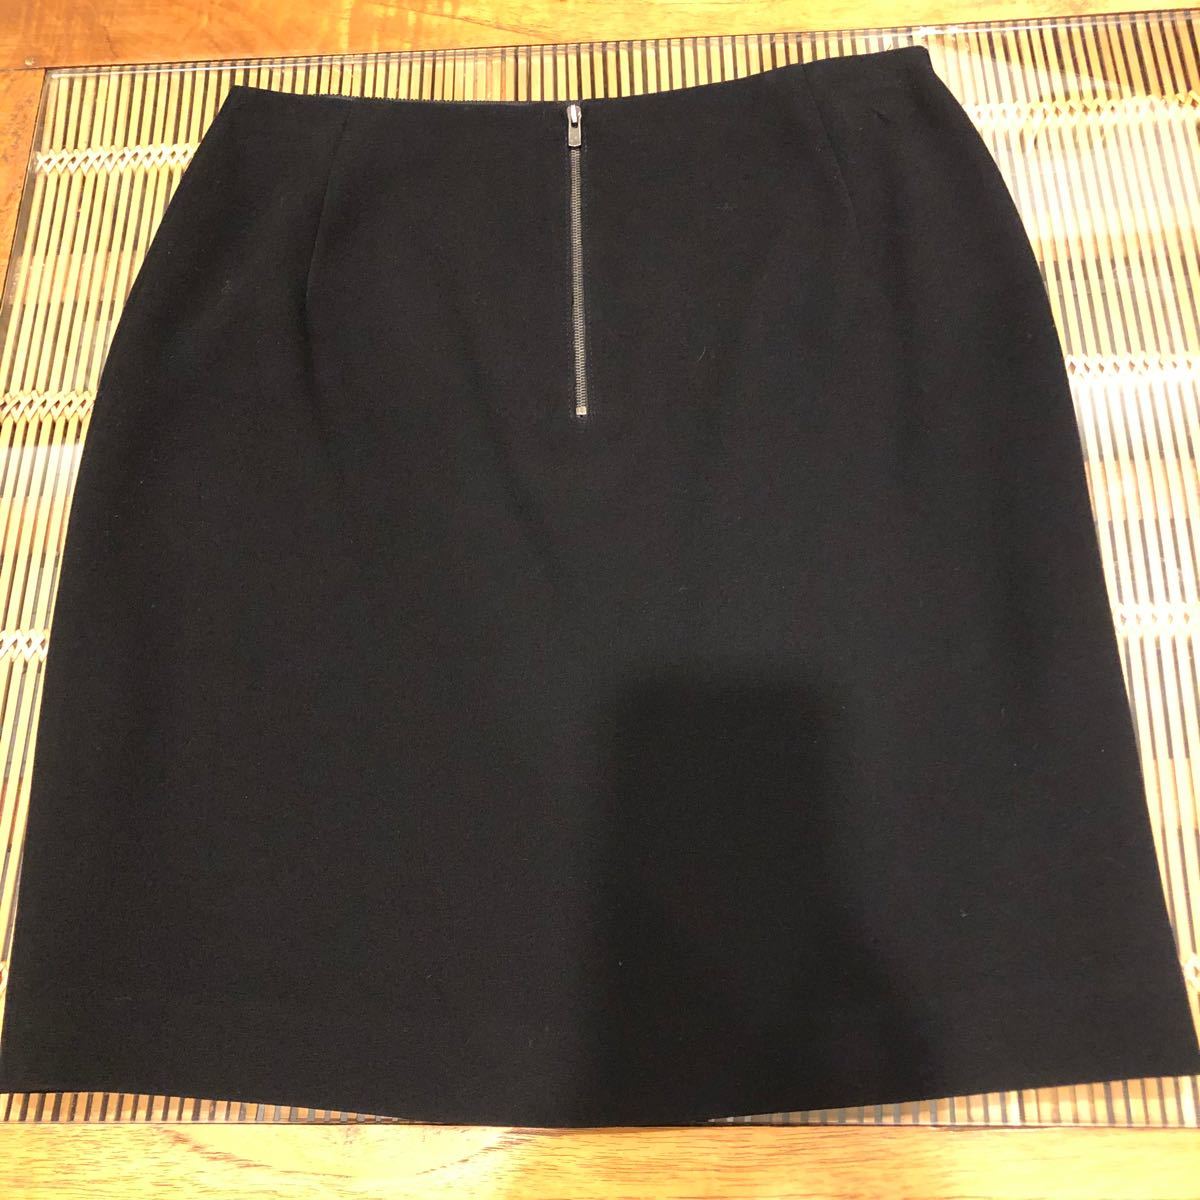 UNITED ARROWS タイトスカート 黒 サイズ36